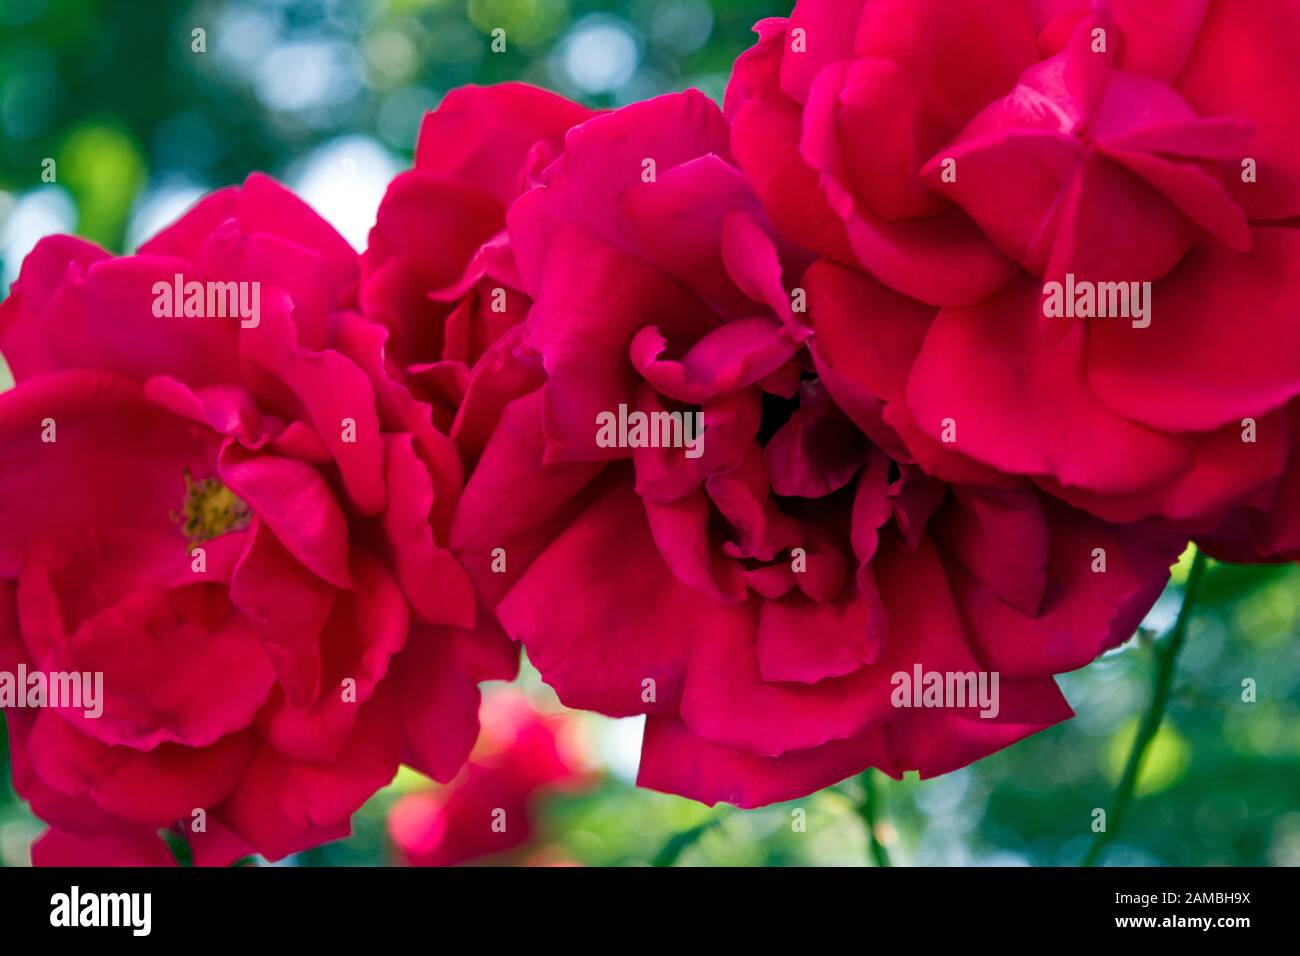 Tre belle rose rosse del giardino. La rosa rossa è il simbolo definitivo dei sentimenti romantici e rappresenta un vero amore. Primo piano. Foto Stock